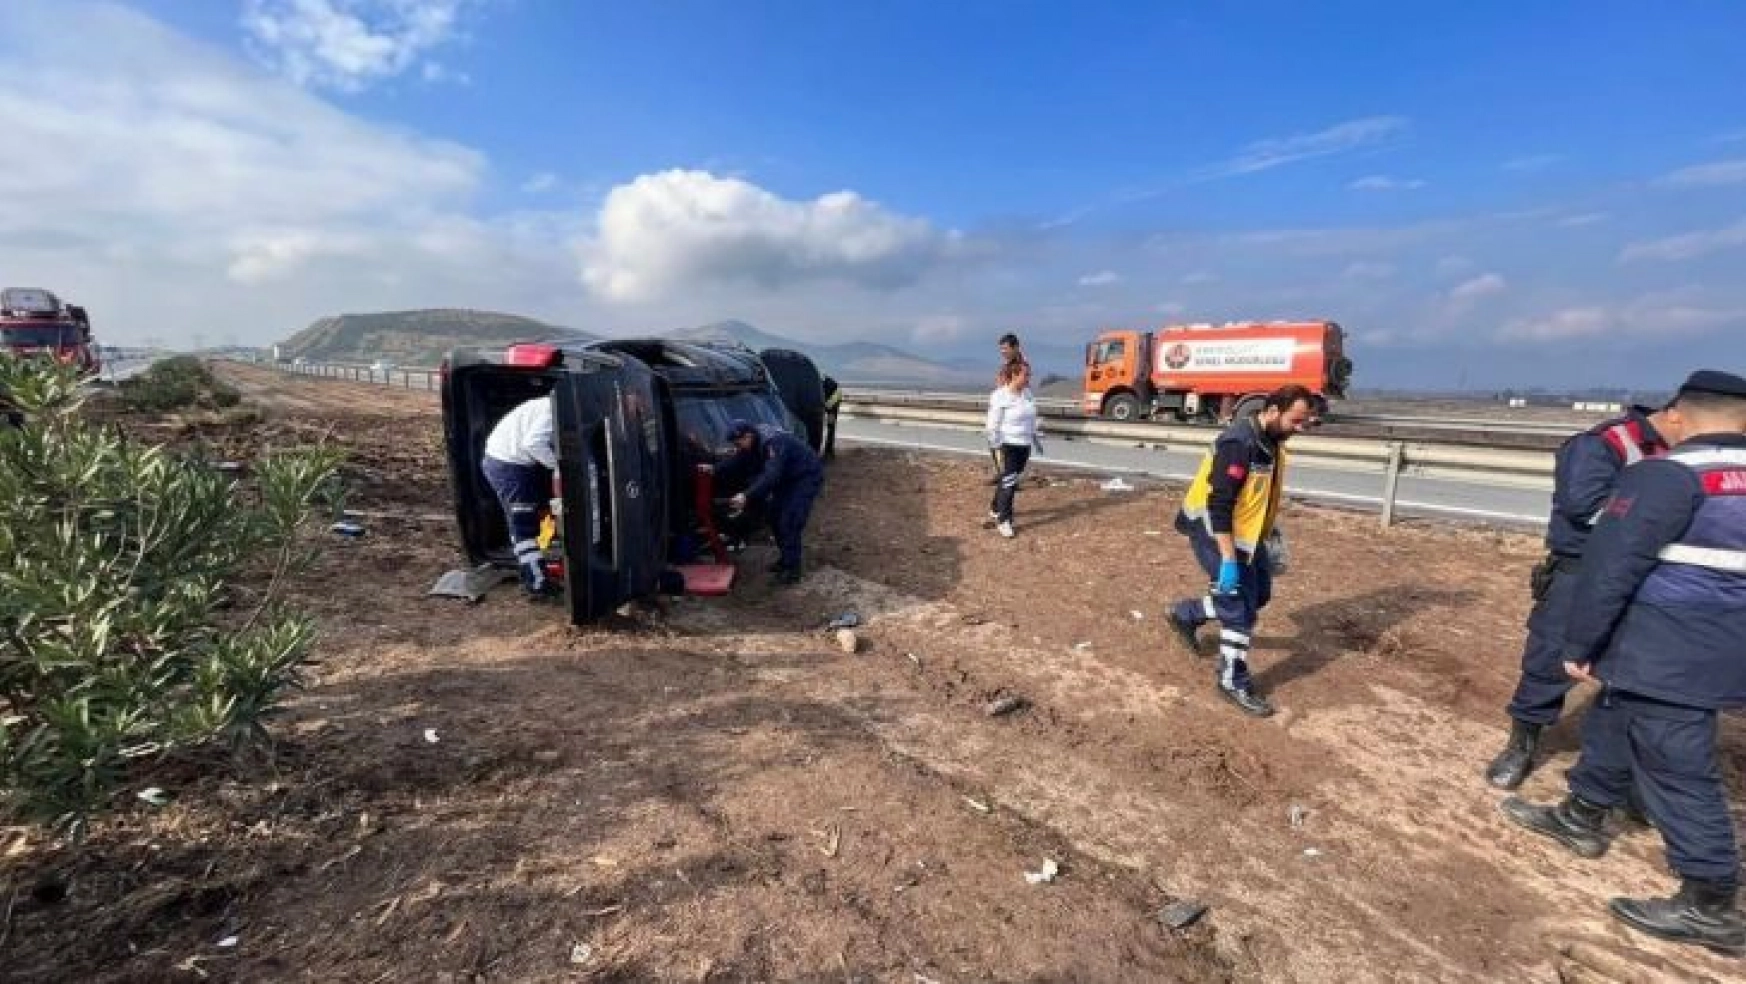 Gaziantep'te minibüs yoldan çıktı: 1 ölü, 10 yaralı